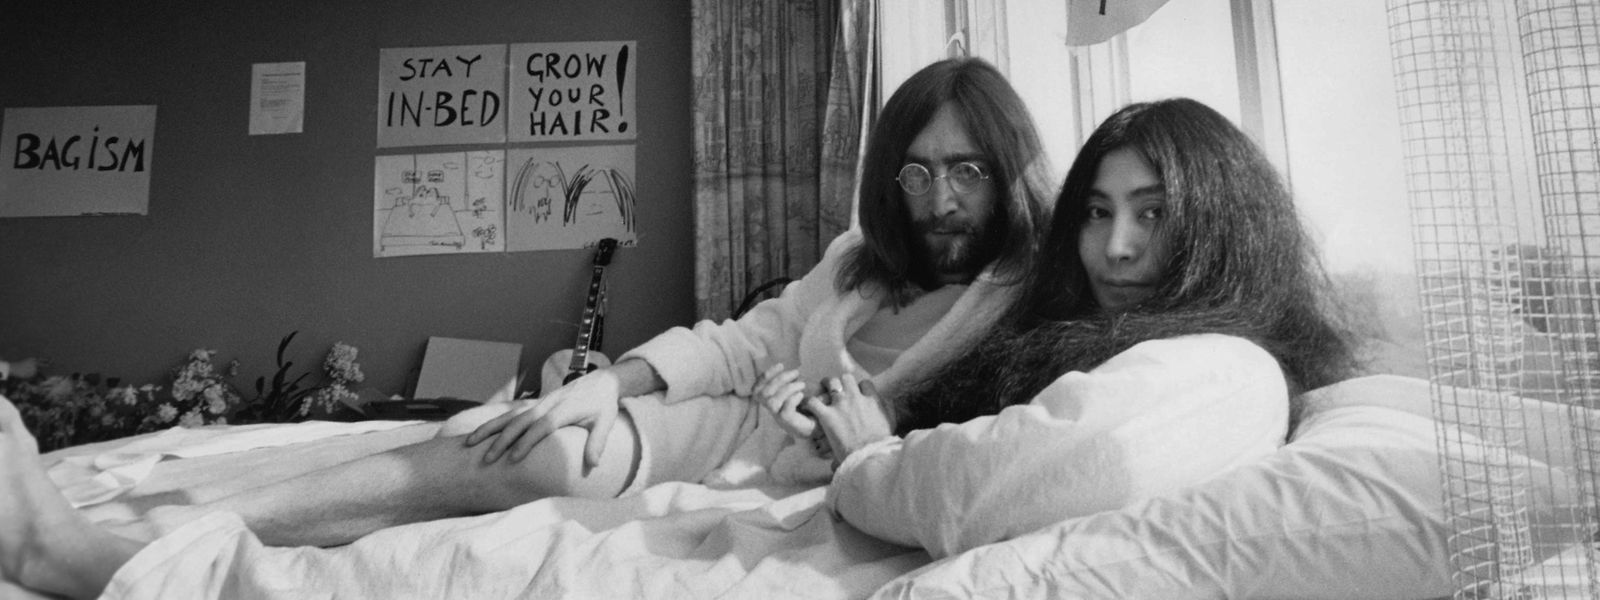 Sieben Tage verbrachten John Lennon und seine Frau Yoko Ono 1971 in einem Hotelbett in Amsterdam - eine viel beachtete symbolische Aktion für den Weltfrieden.